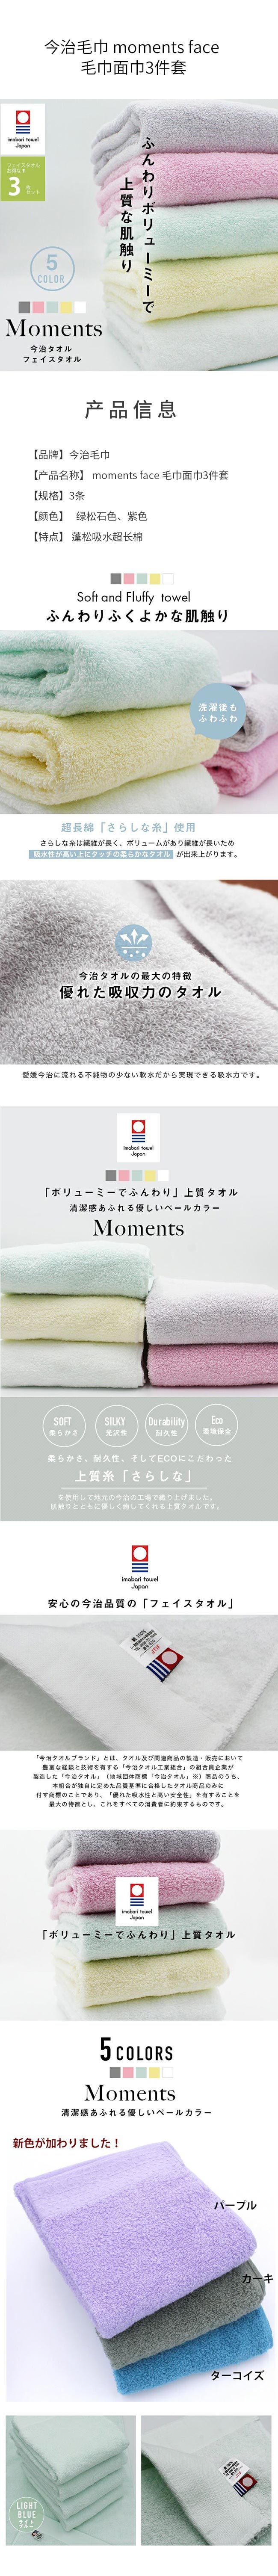 【日本直郵】今治毛巾 moments face 毛巾面巾3件套 綠松石色3條